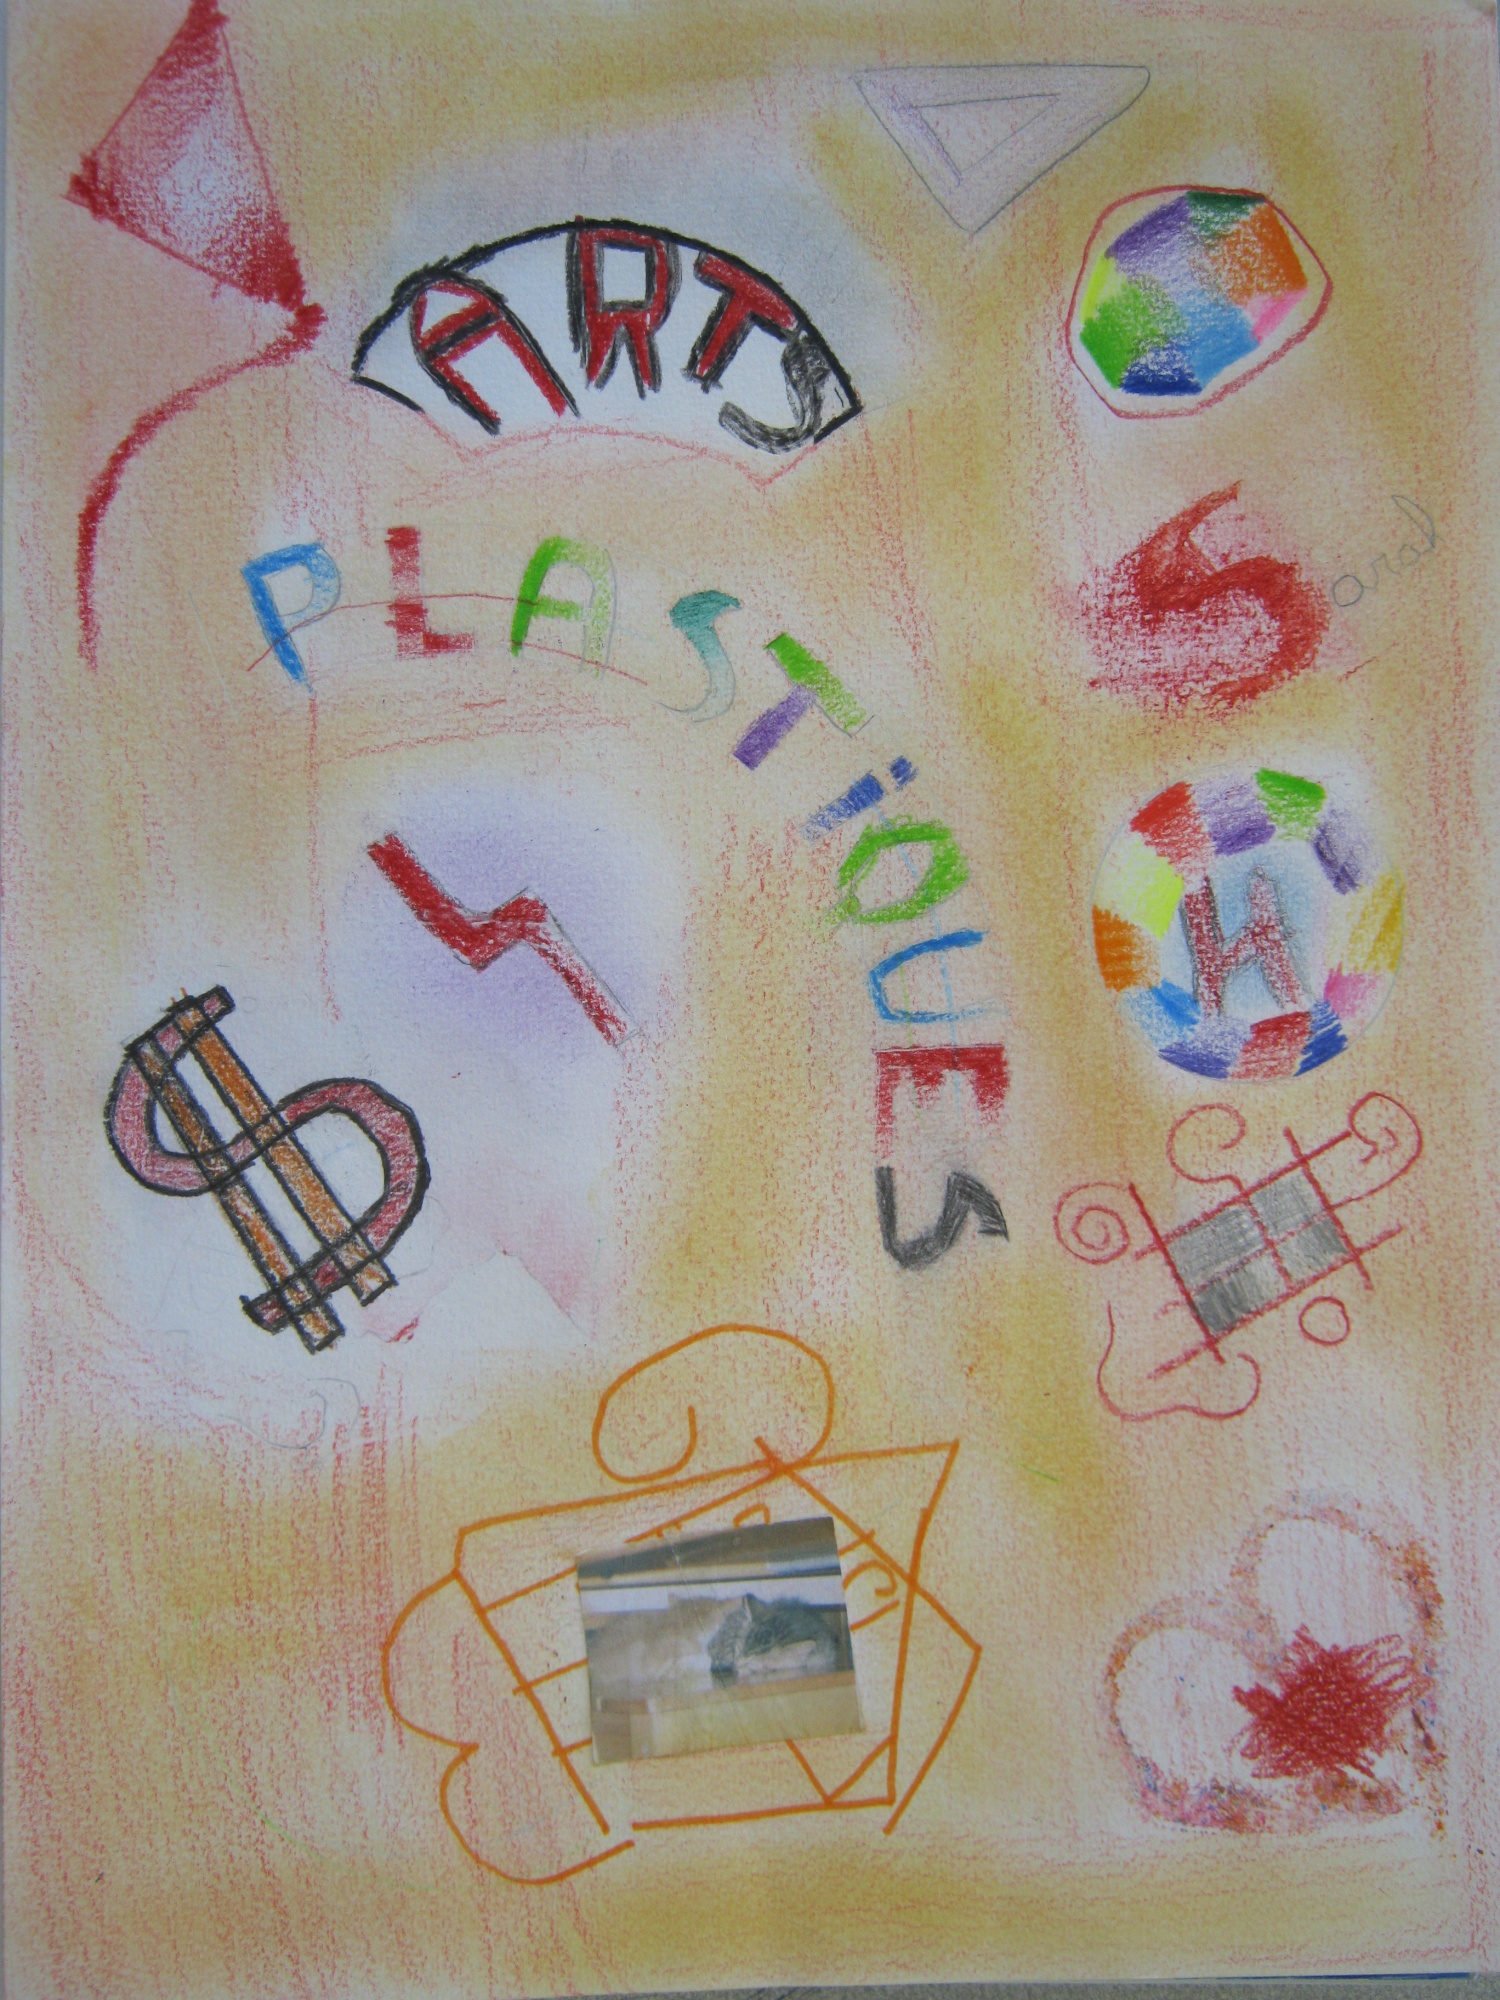 Les arts plastiques et moi - ARTARTART au collège ARThur Rimbaud